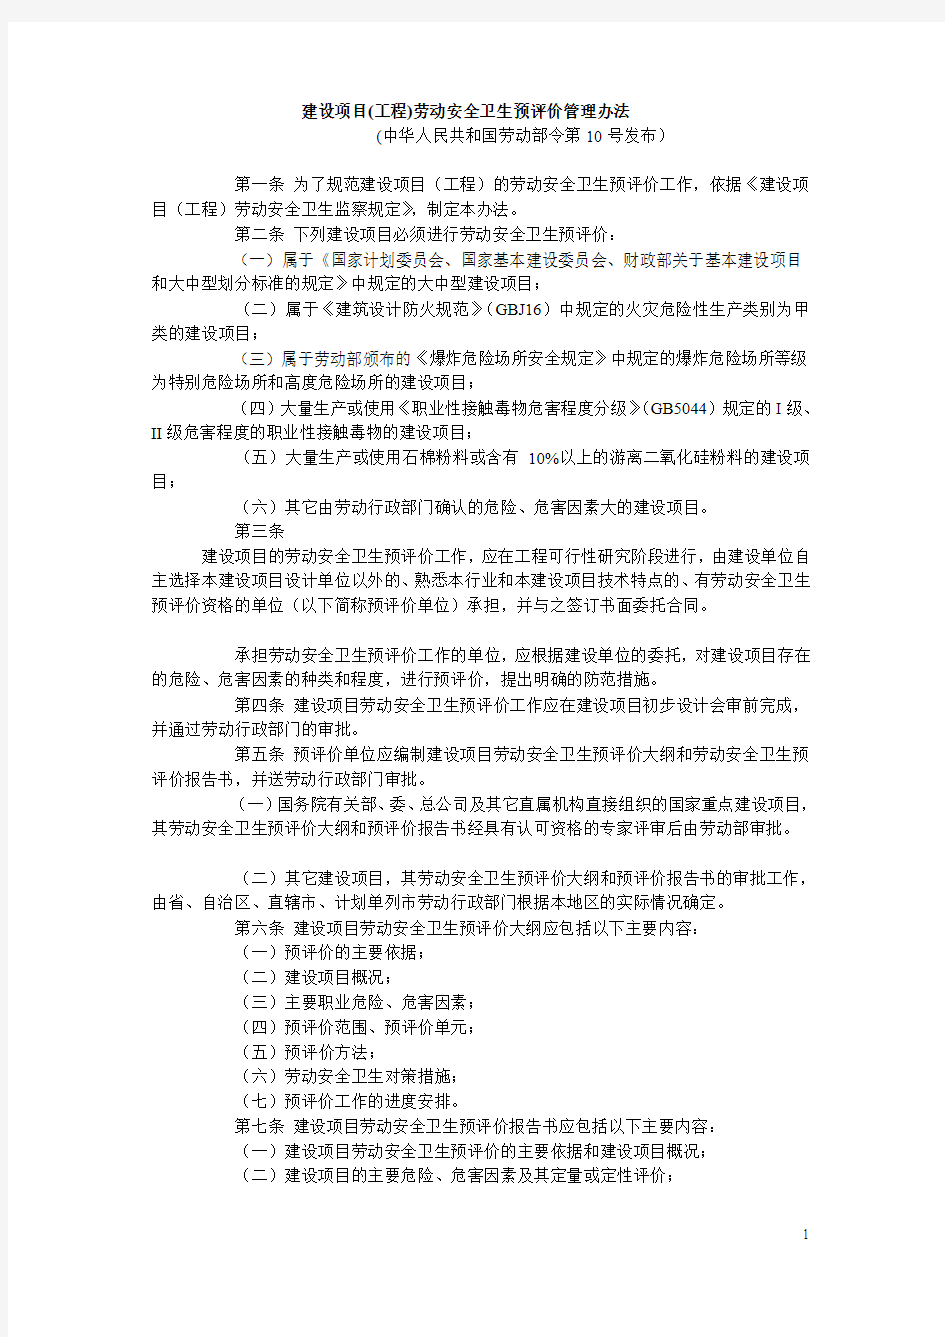 中华人民共和国劳动部第10号令建设项目(工程)劳动安全卫生预评价管理办法